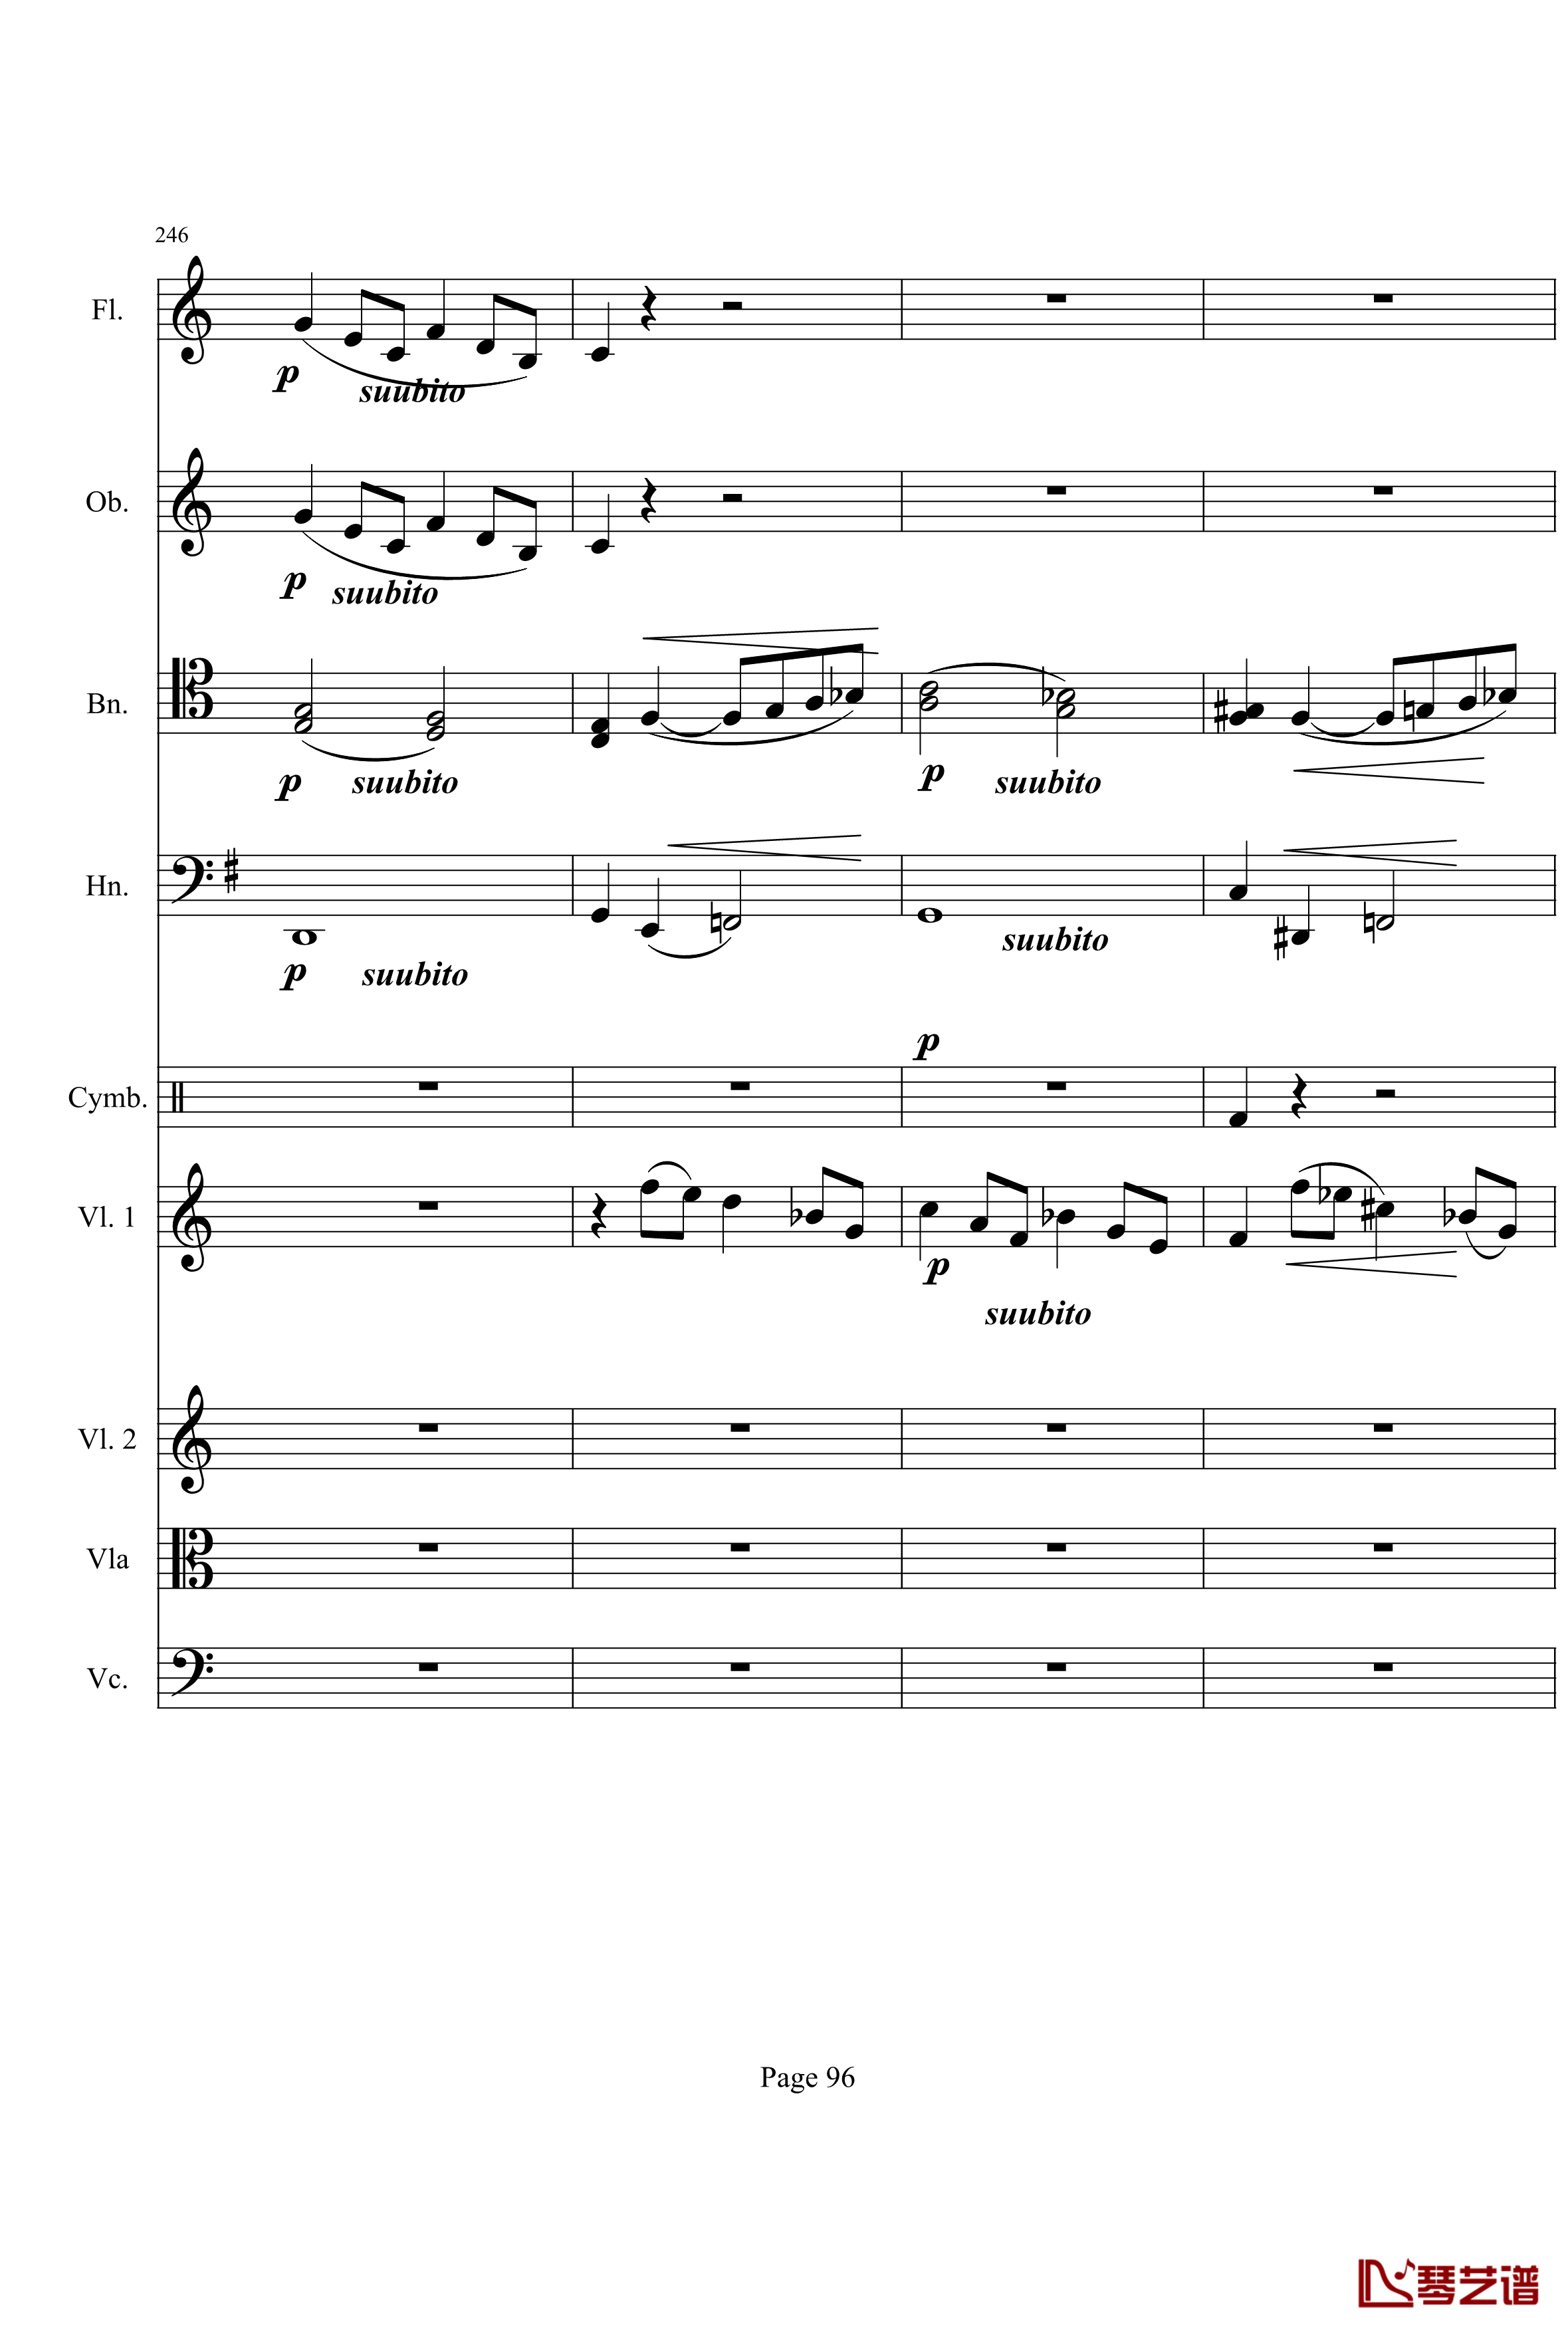 奏鸣曲之交响钢琴谱-第21首-Ⅰ-贝多芬-beethoven96